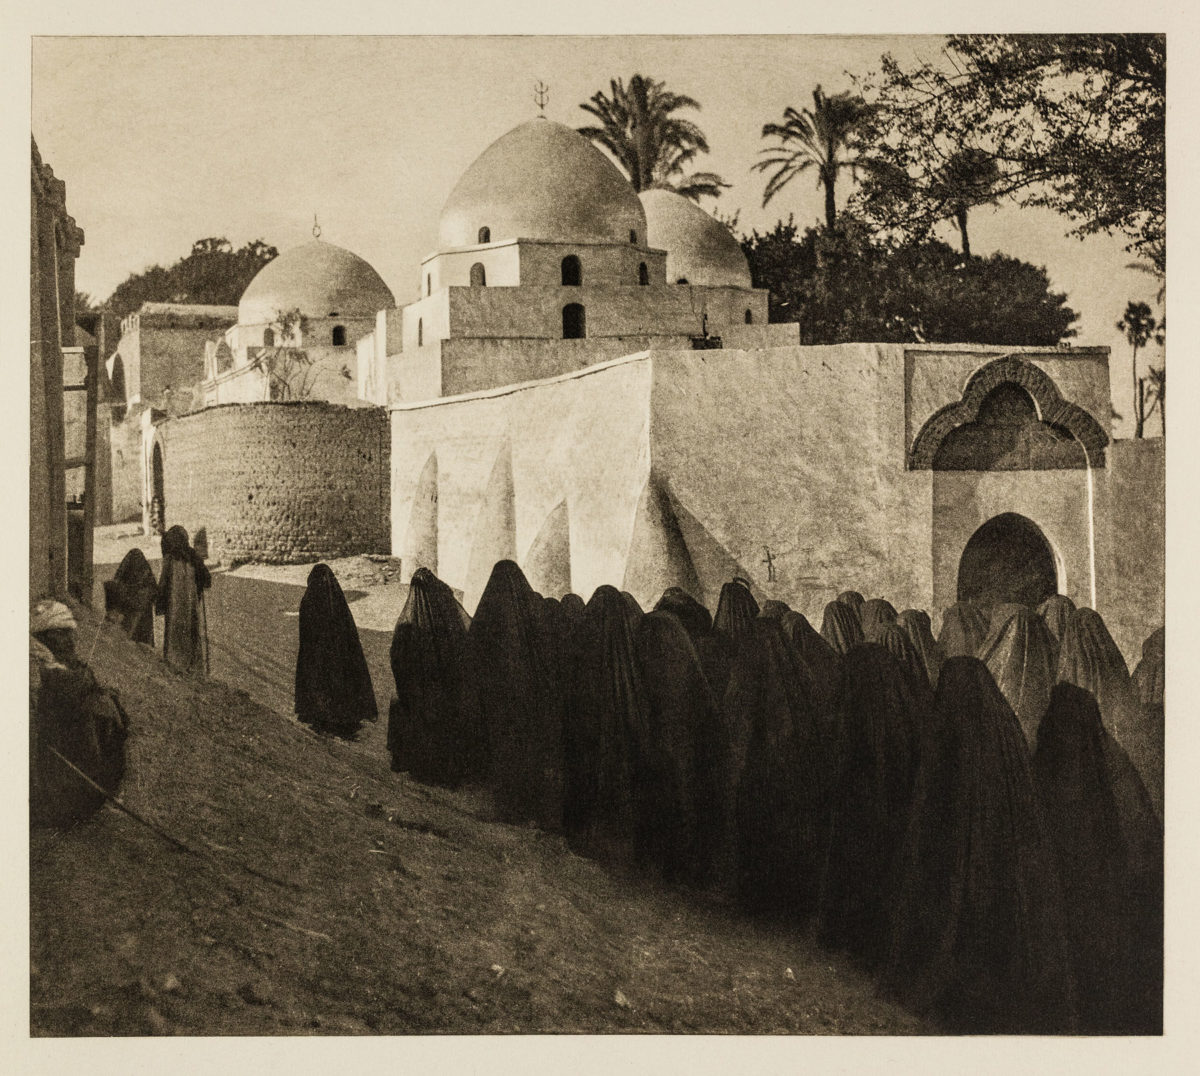 Προς το νεκροταφείο της πόλης Ασιούτ, Αίγυπτος 1929. Από τον τόμο Égypte, εκδότης Paul Trembley,Γενεύη (1932).